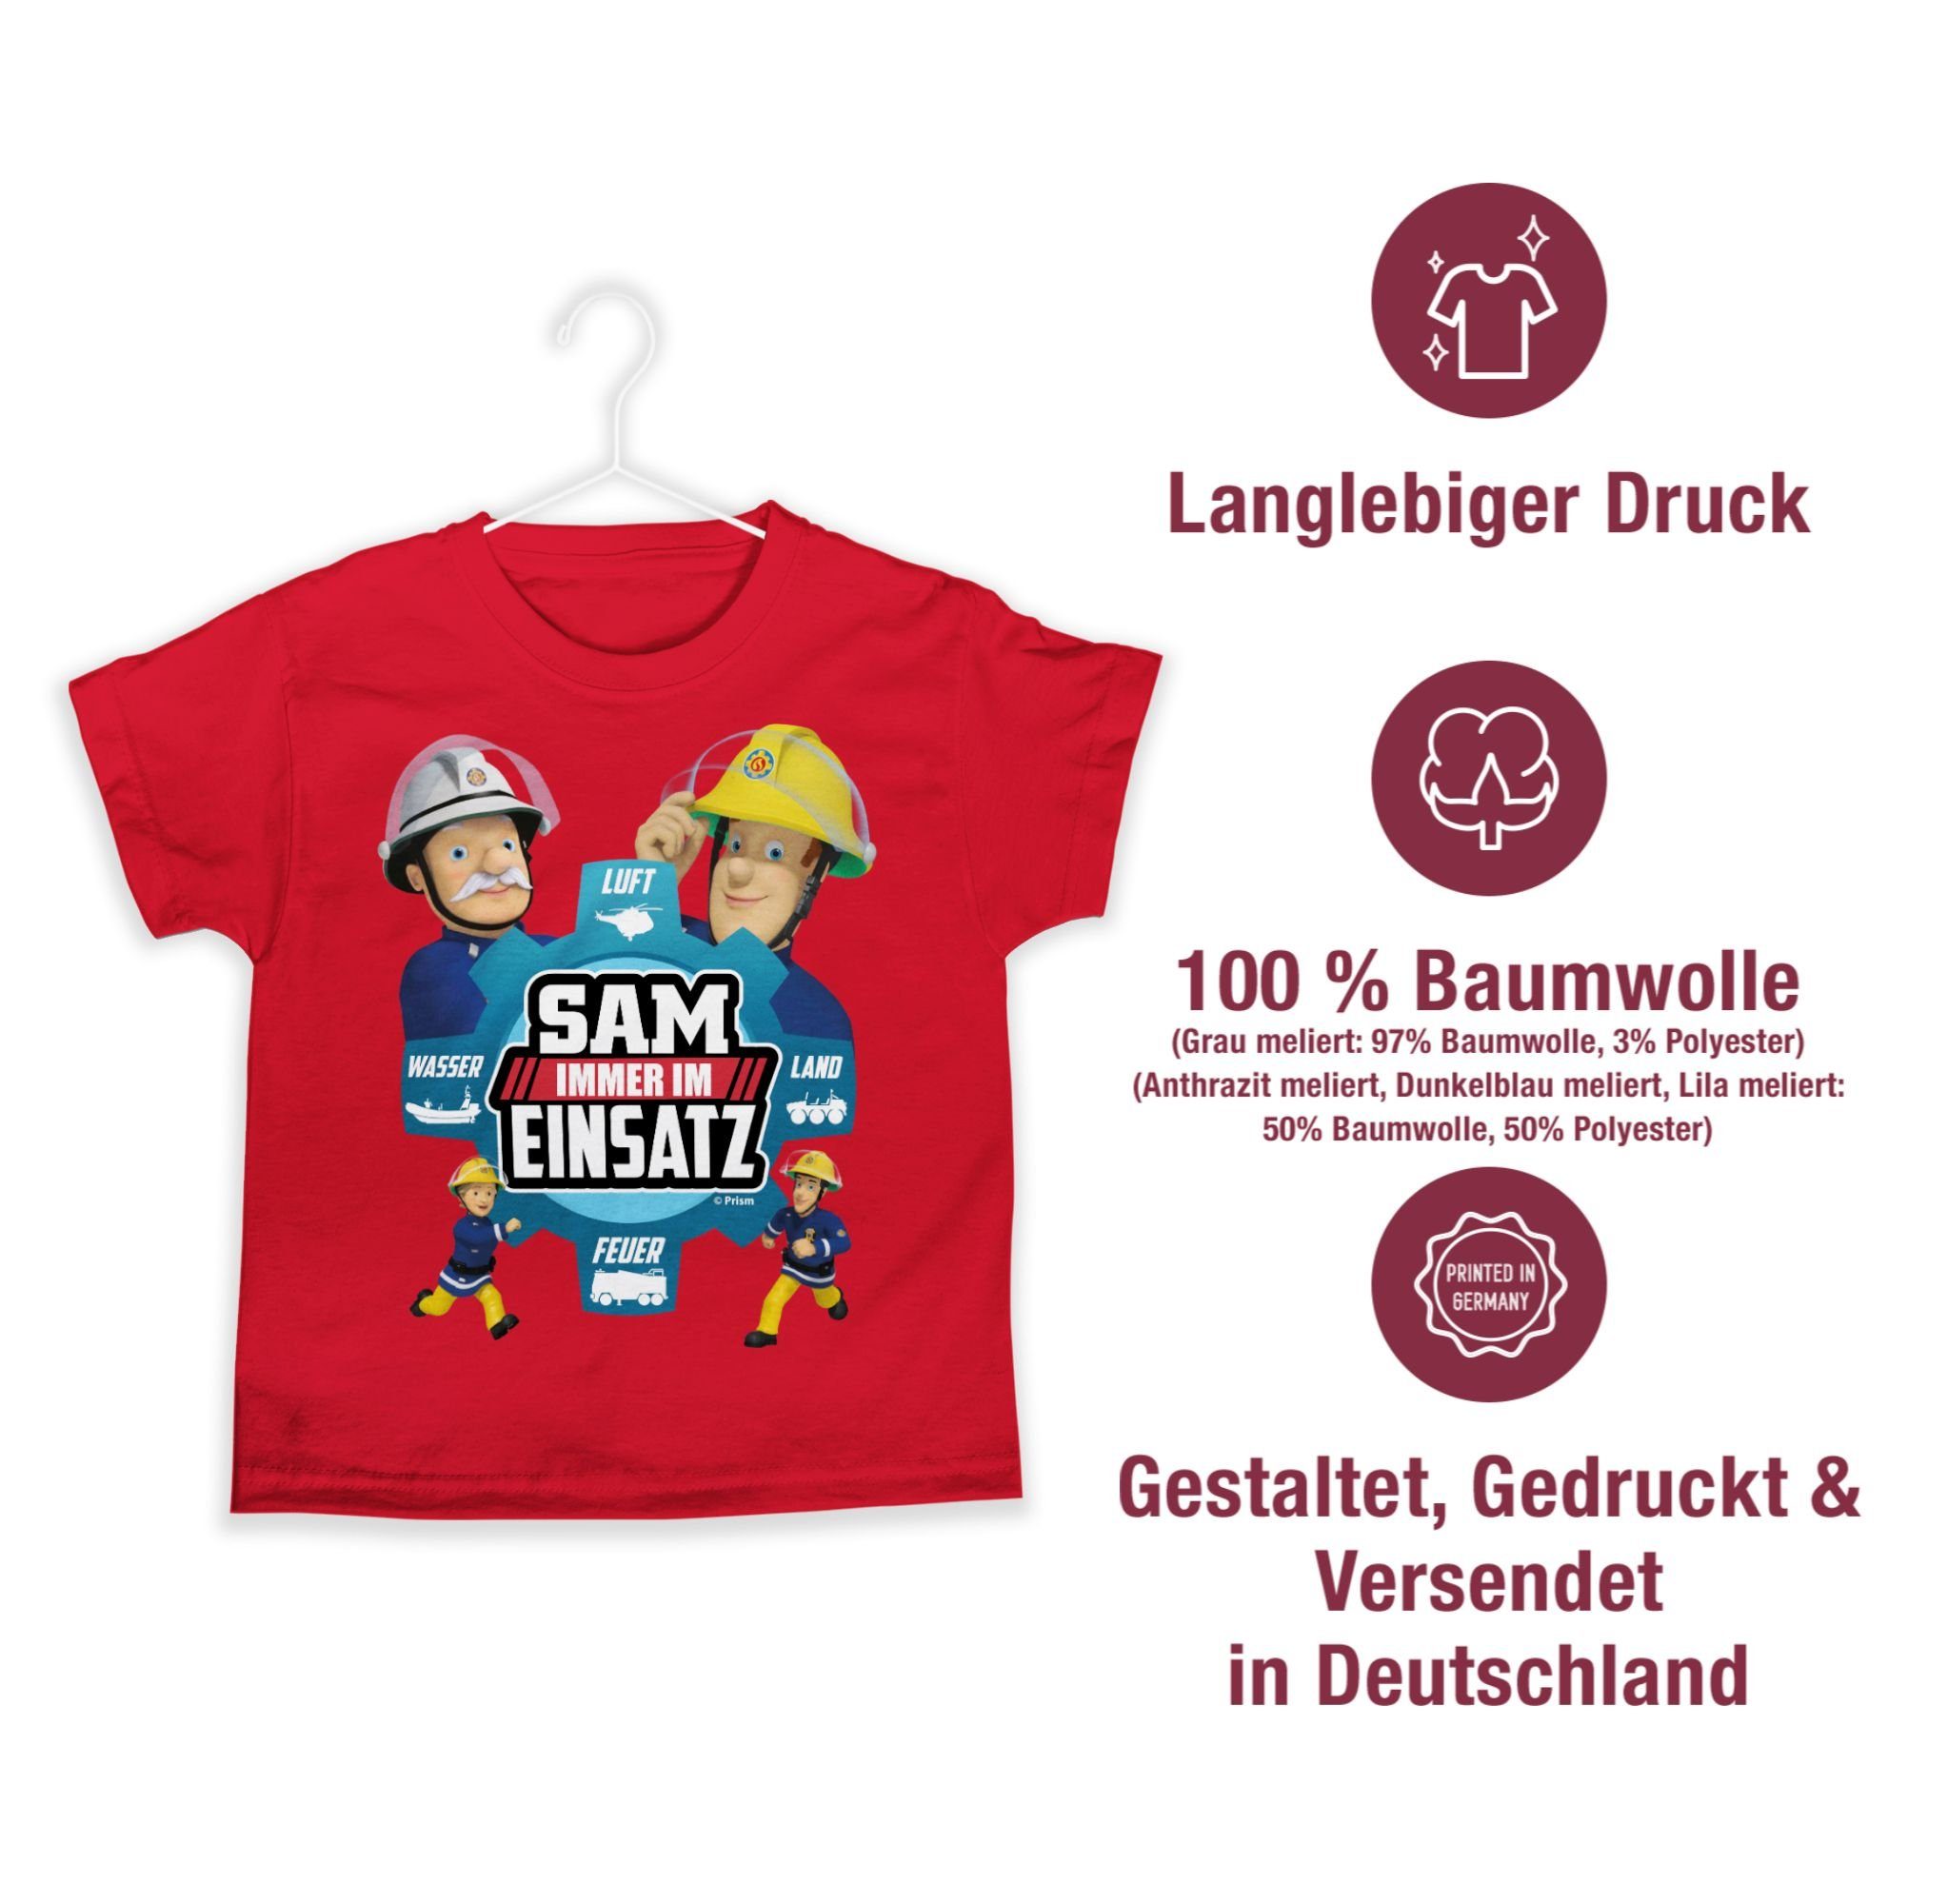 Shirtracer T-Shirt Sam - Immer Sam Feuerwehrmann Jungen 01 im Einsatz Rot